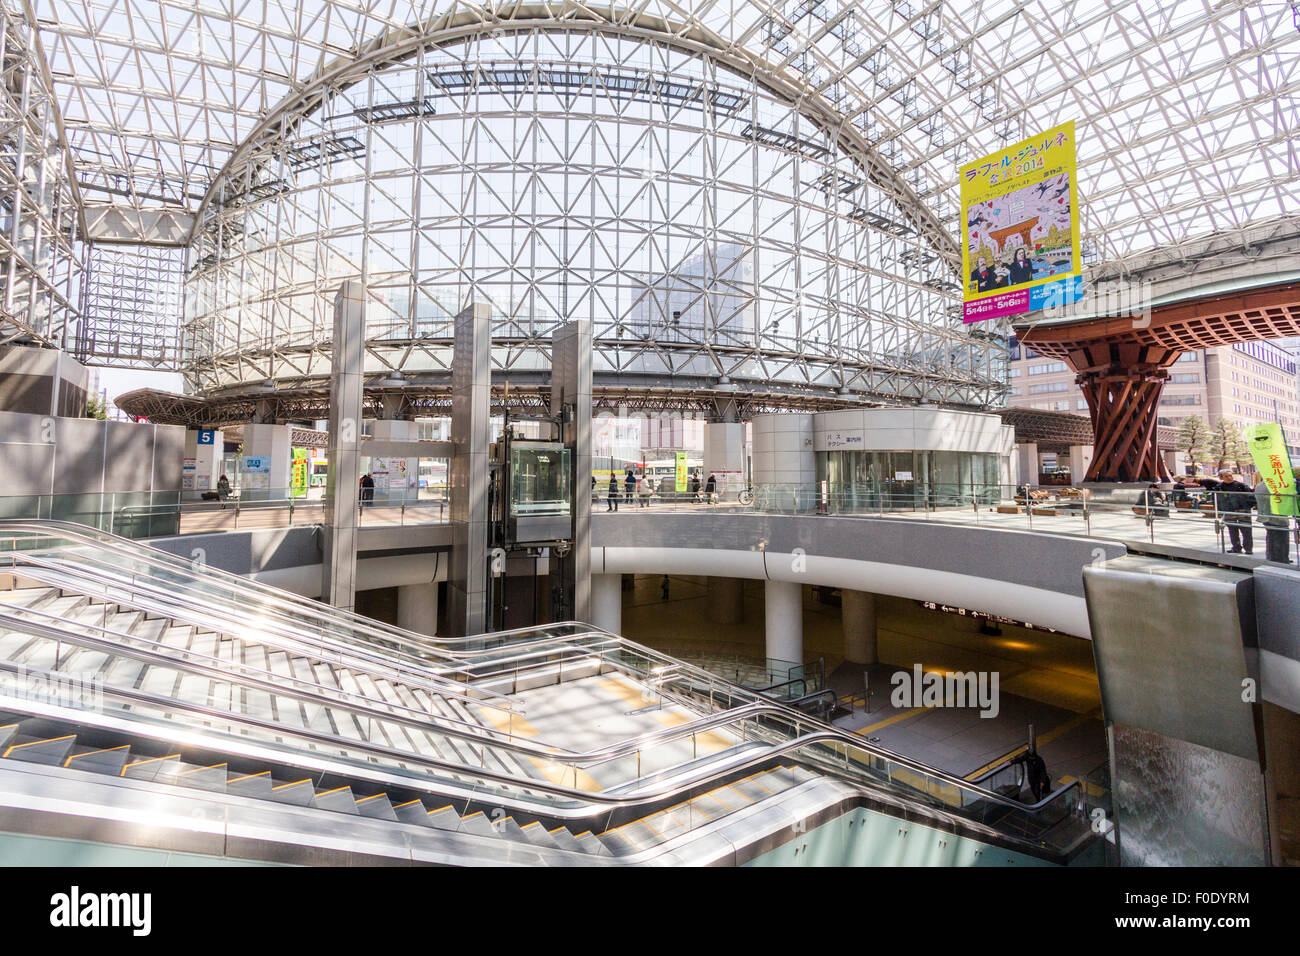 Giappone, Kanazawa. Stazione di JR, interno dell'esterno atrio in vetro, Motenashi (Benvenuti) cupola, con scale mobili al livello inferiore l'area dello shopping. Notte tempo. Foto Stock